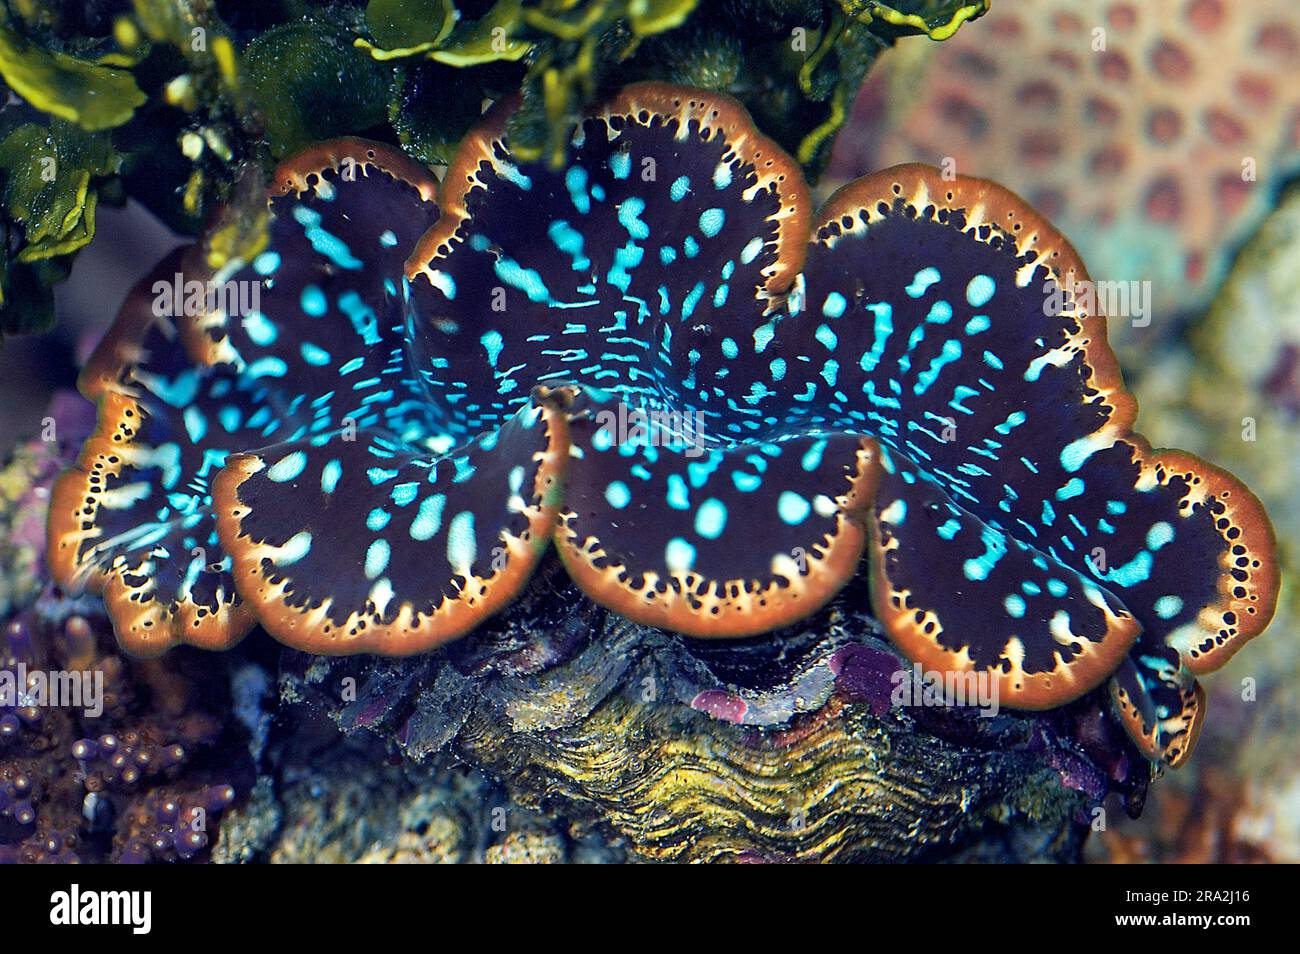 Giant clam (Tridacnaa sp., robably Tridacna maxima.). Aquariumphoto. Stock Photo